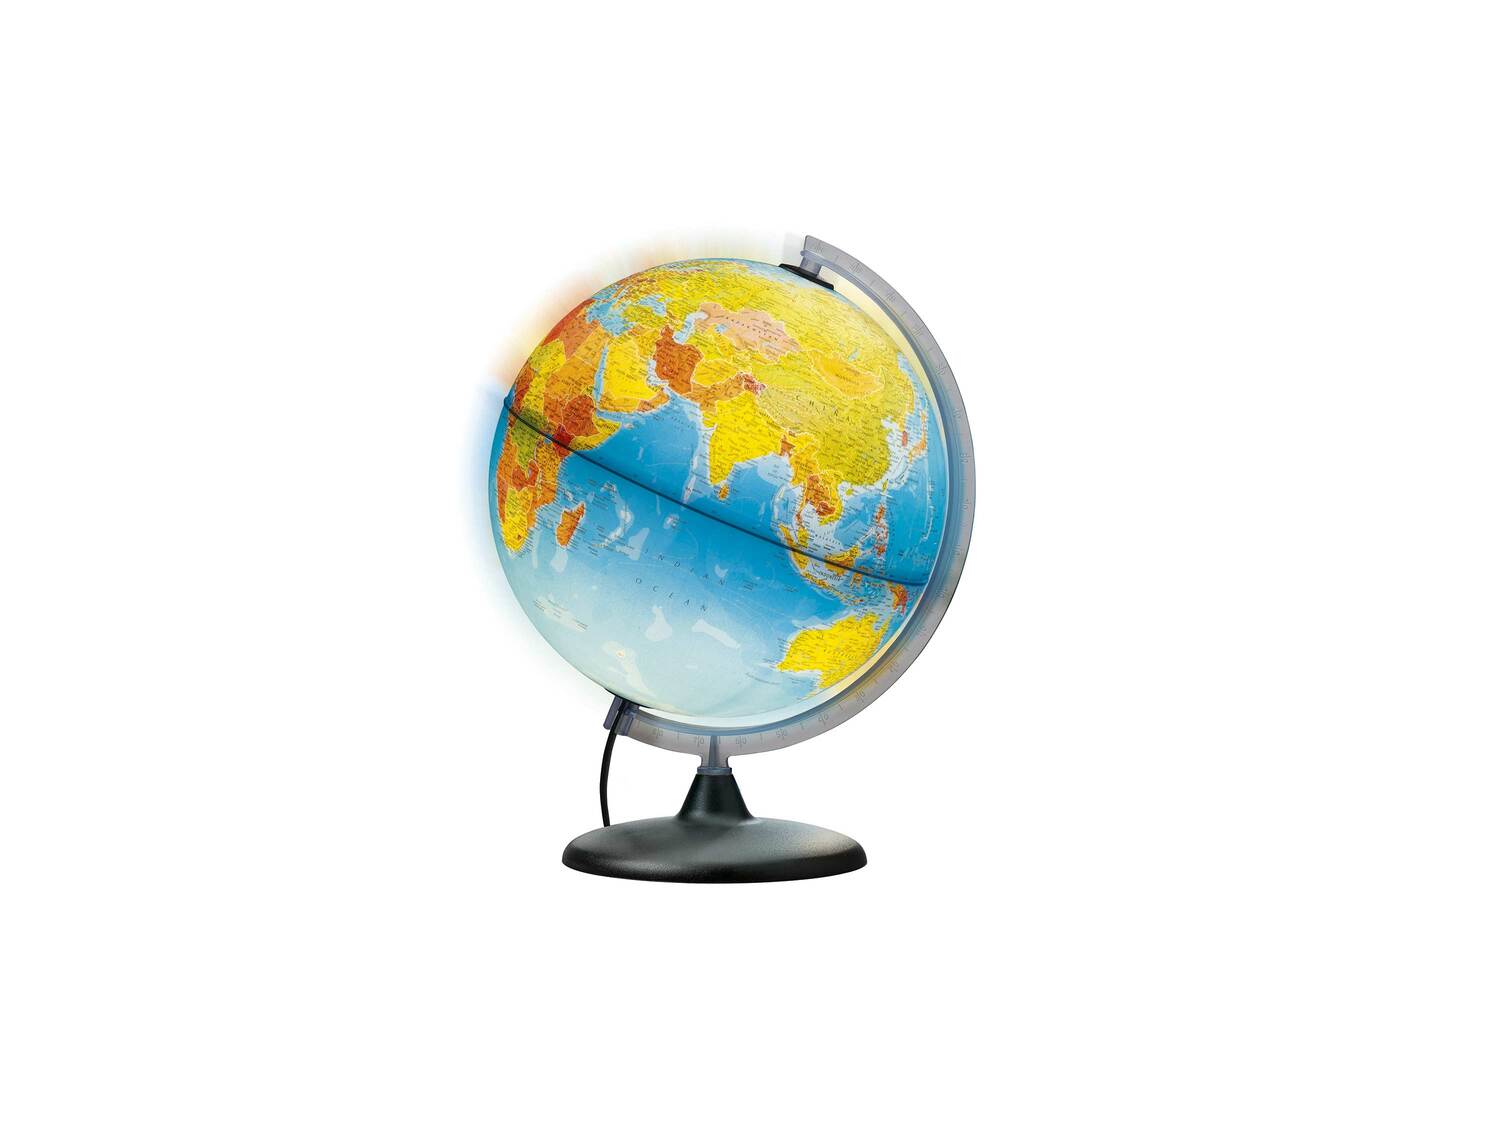 Globus podświetlany Melinera, cena 64,90 PLN 
- Ø ok. 30 cm
- wys. ok. 41 cm
- ...